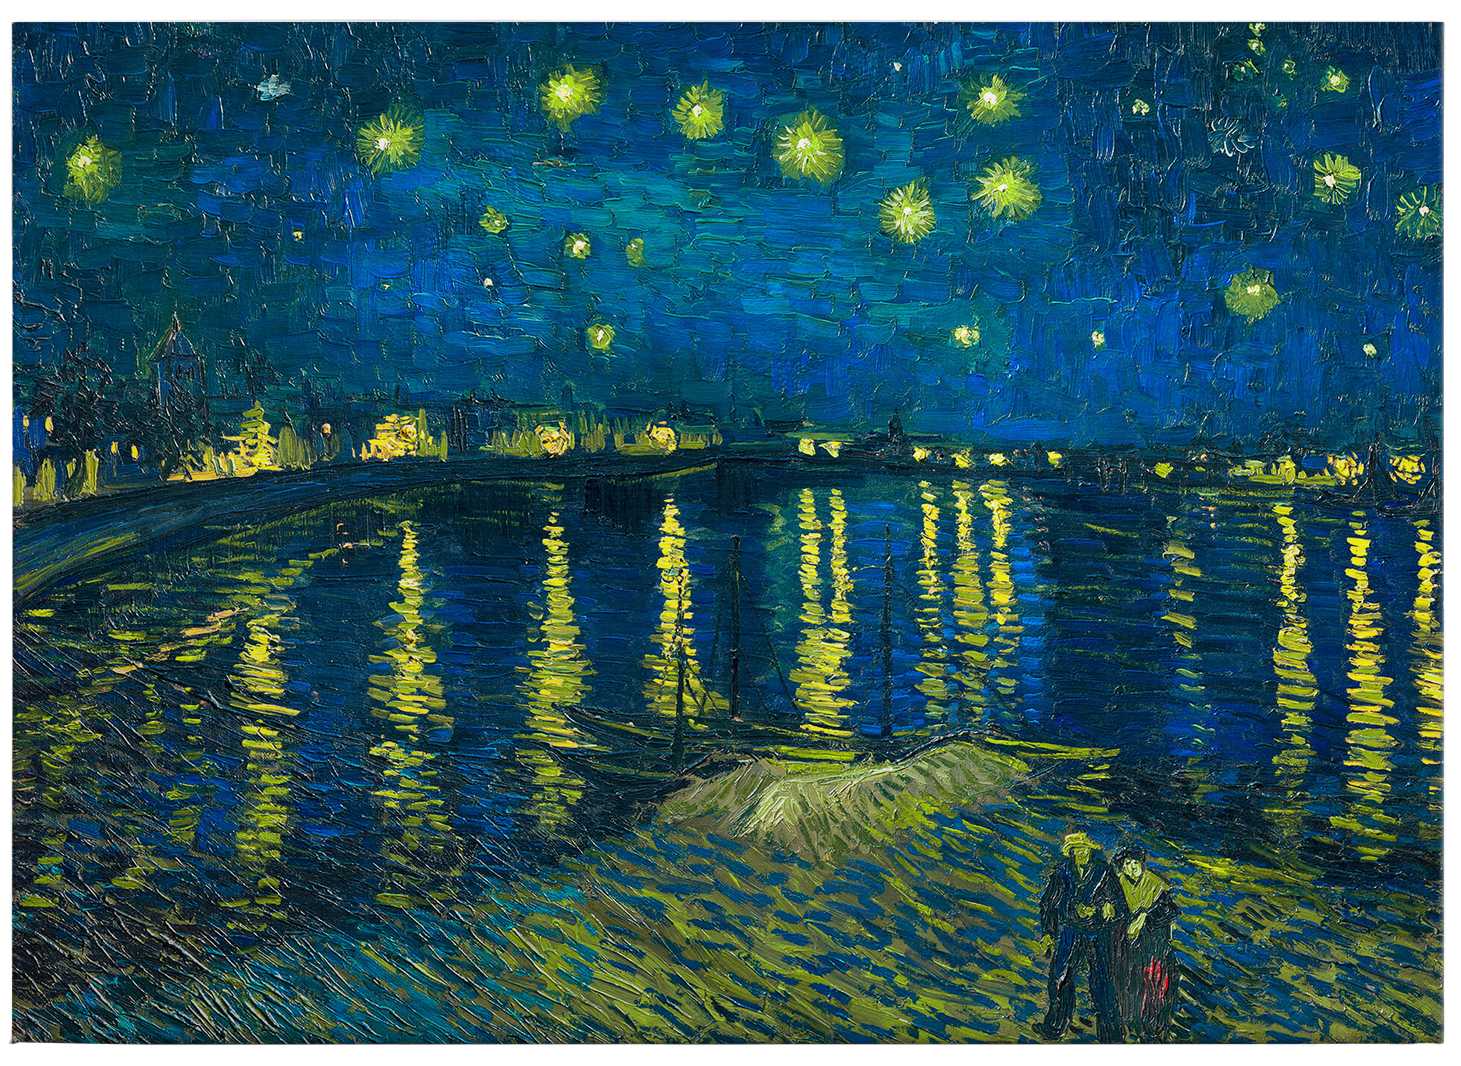             Toile "Nuit étoilée" de Van Gogh - 0,70 m x 0,50 m
        